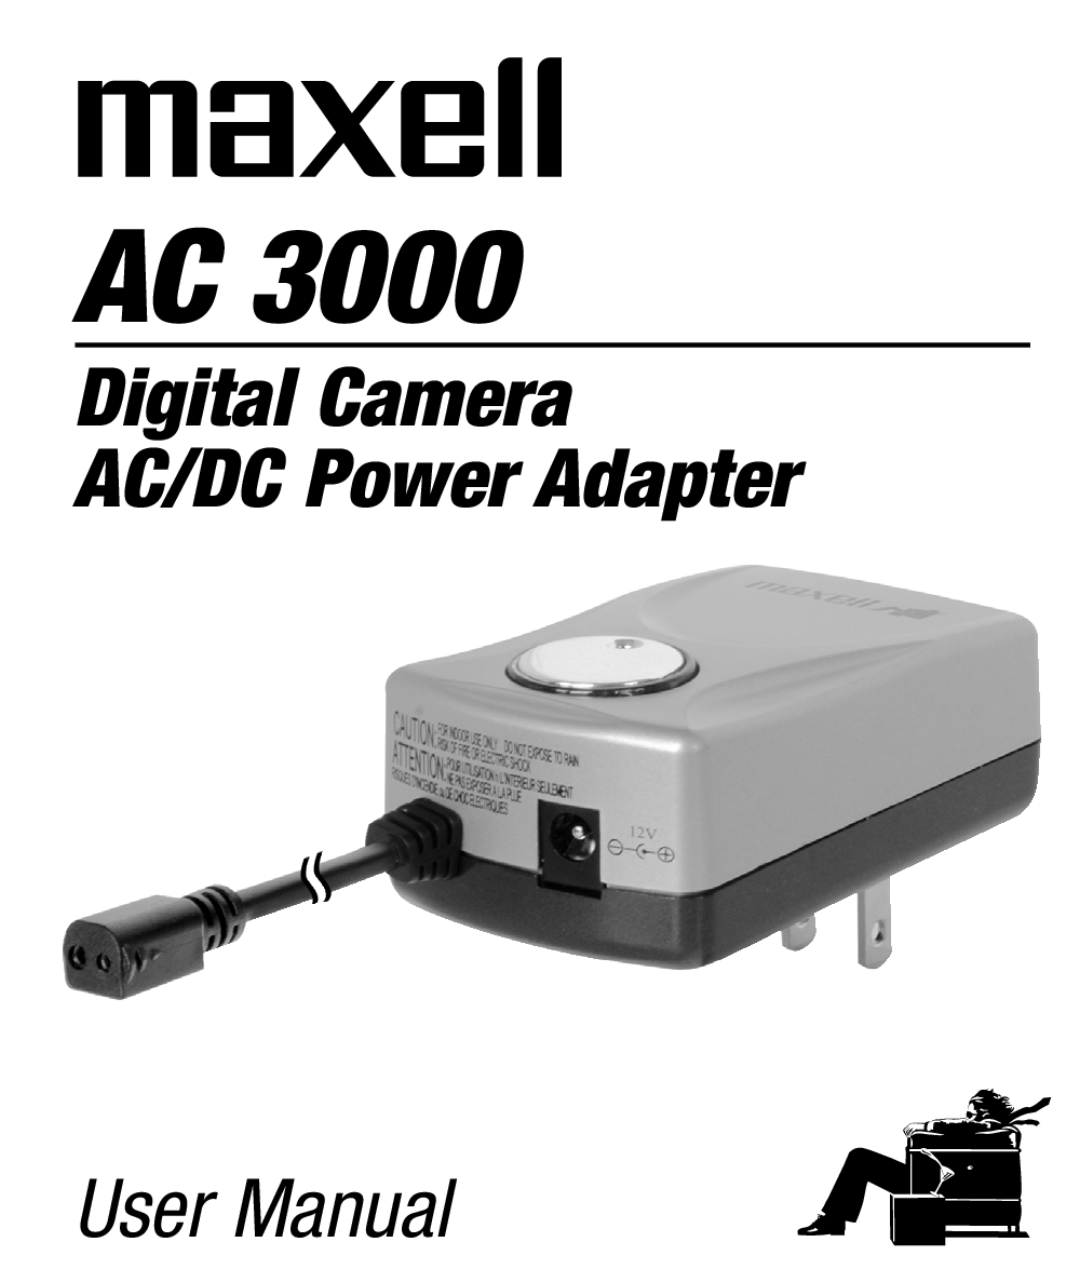 Maxell AC 3000 manual Digital Camera AC/DC Power Adapter, User Manual 